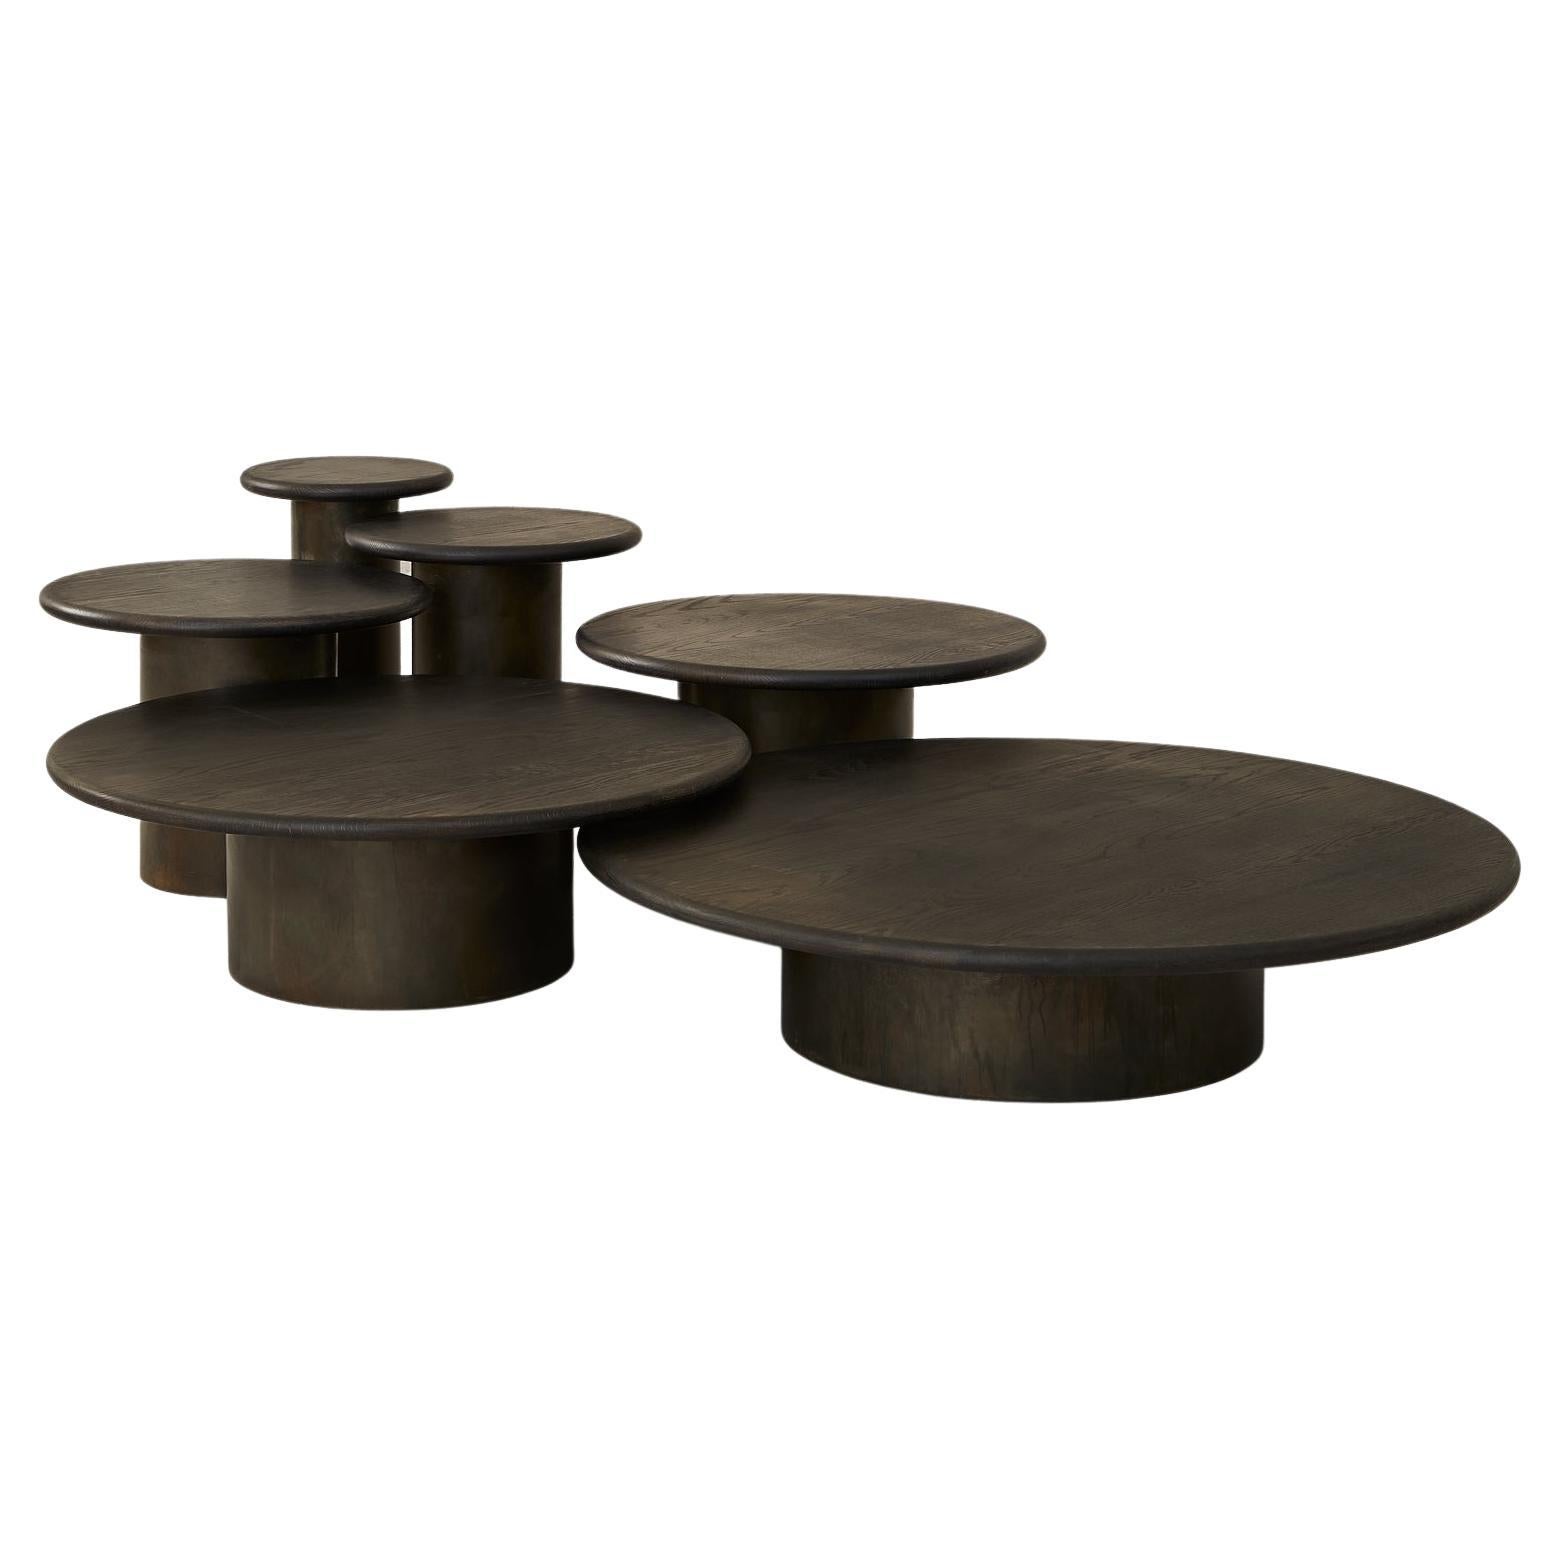 Raindrop-Tisch-Set, schwarze Eiche / patiniert